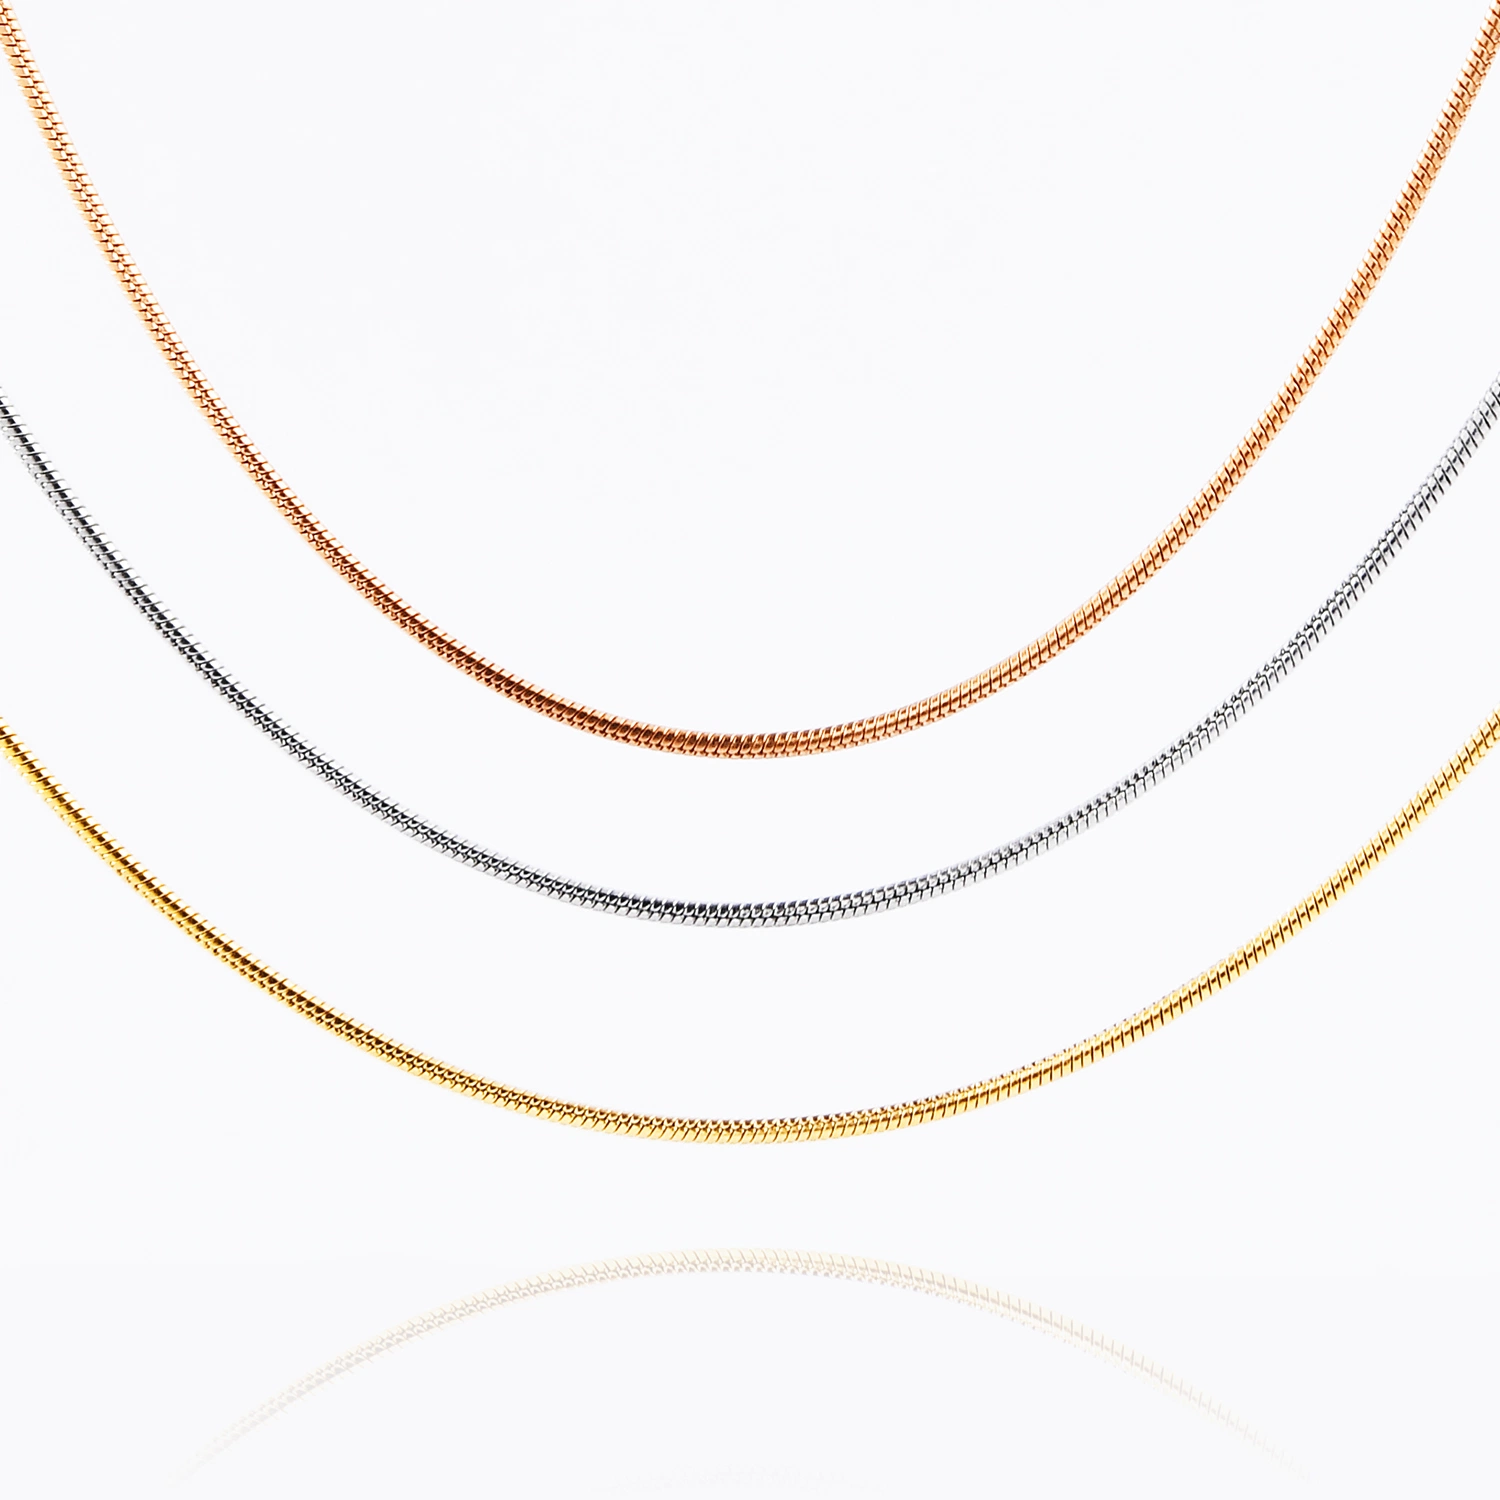 Edelstahl Runde Schlangenkette 1,2mm 2mm 2,4mm 3,2mm rund Halskette Zubehör für Kleidung Glas Körper Schmuck